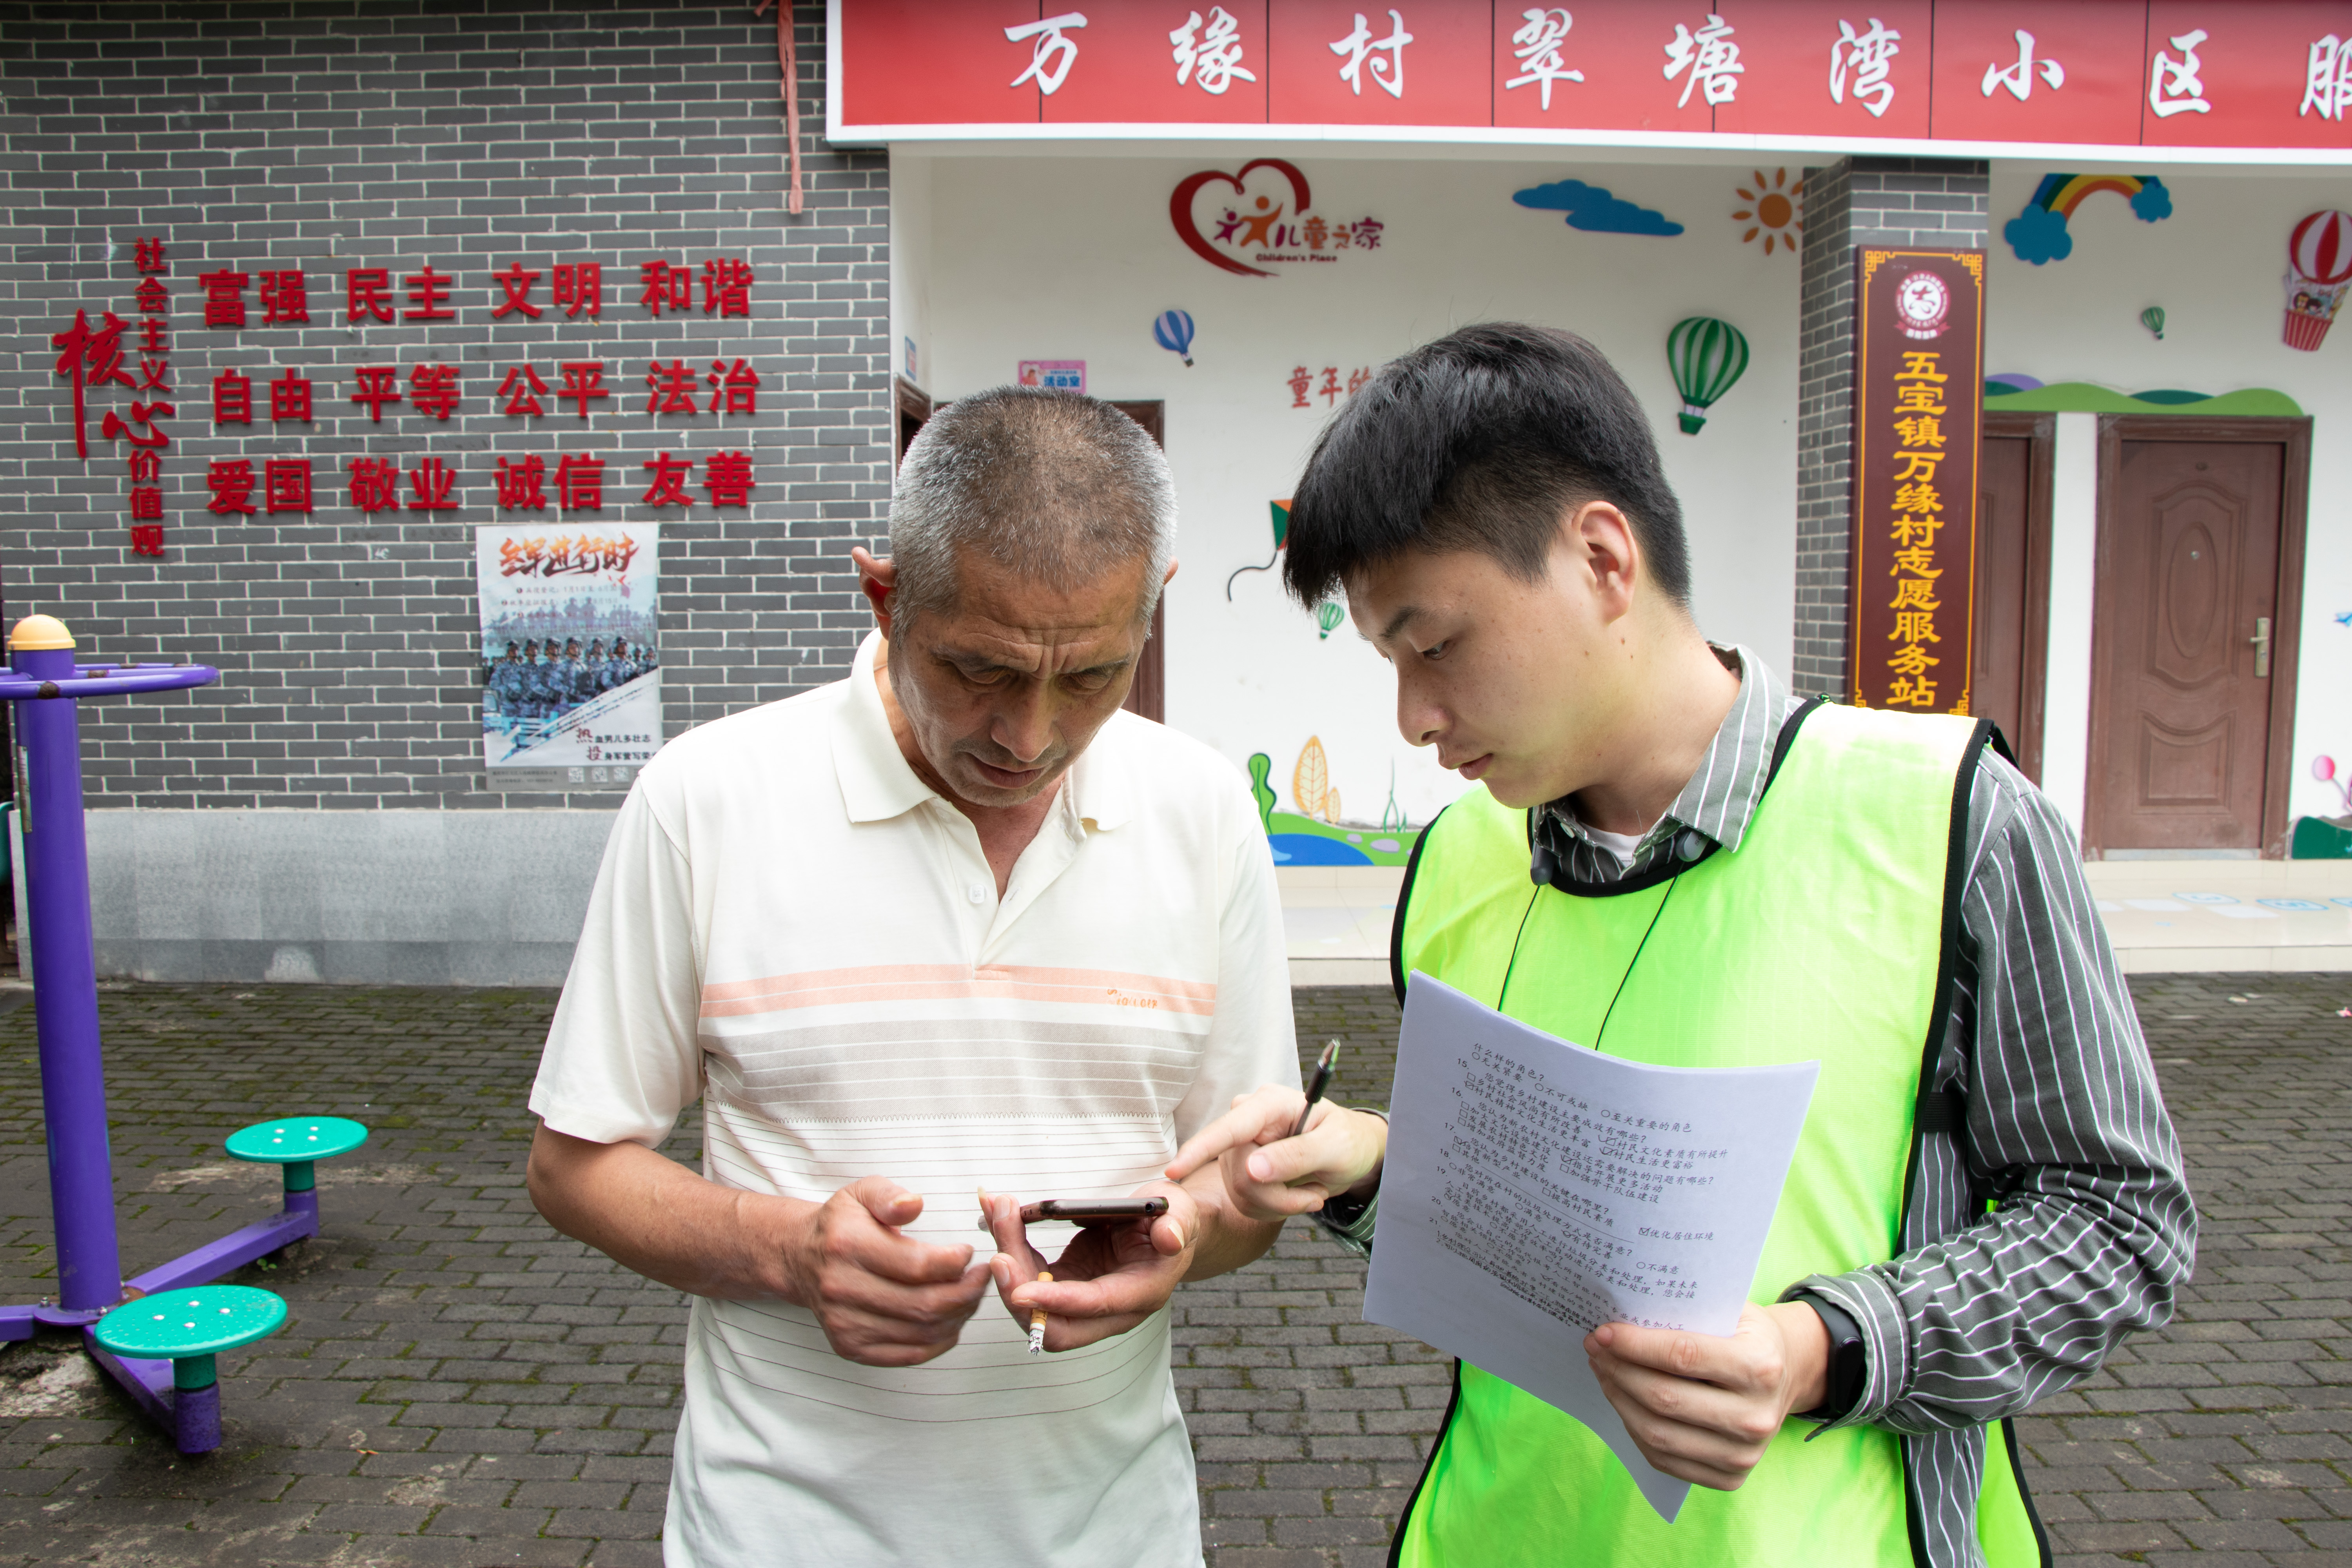 重庆理工大学暑期"三下乡":人工智能在乡村建设中的普及调查